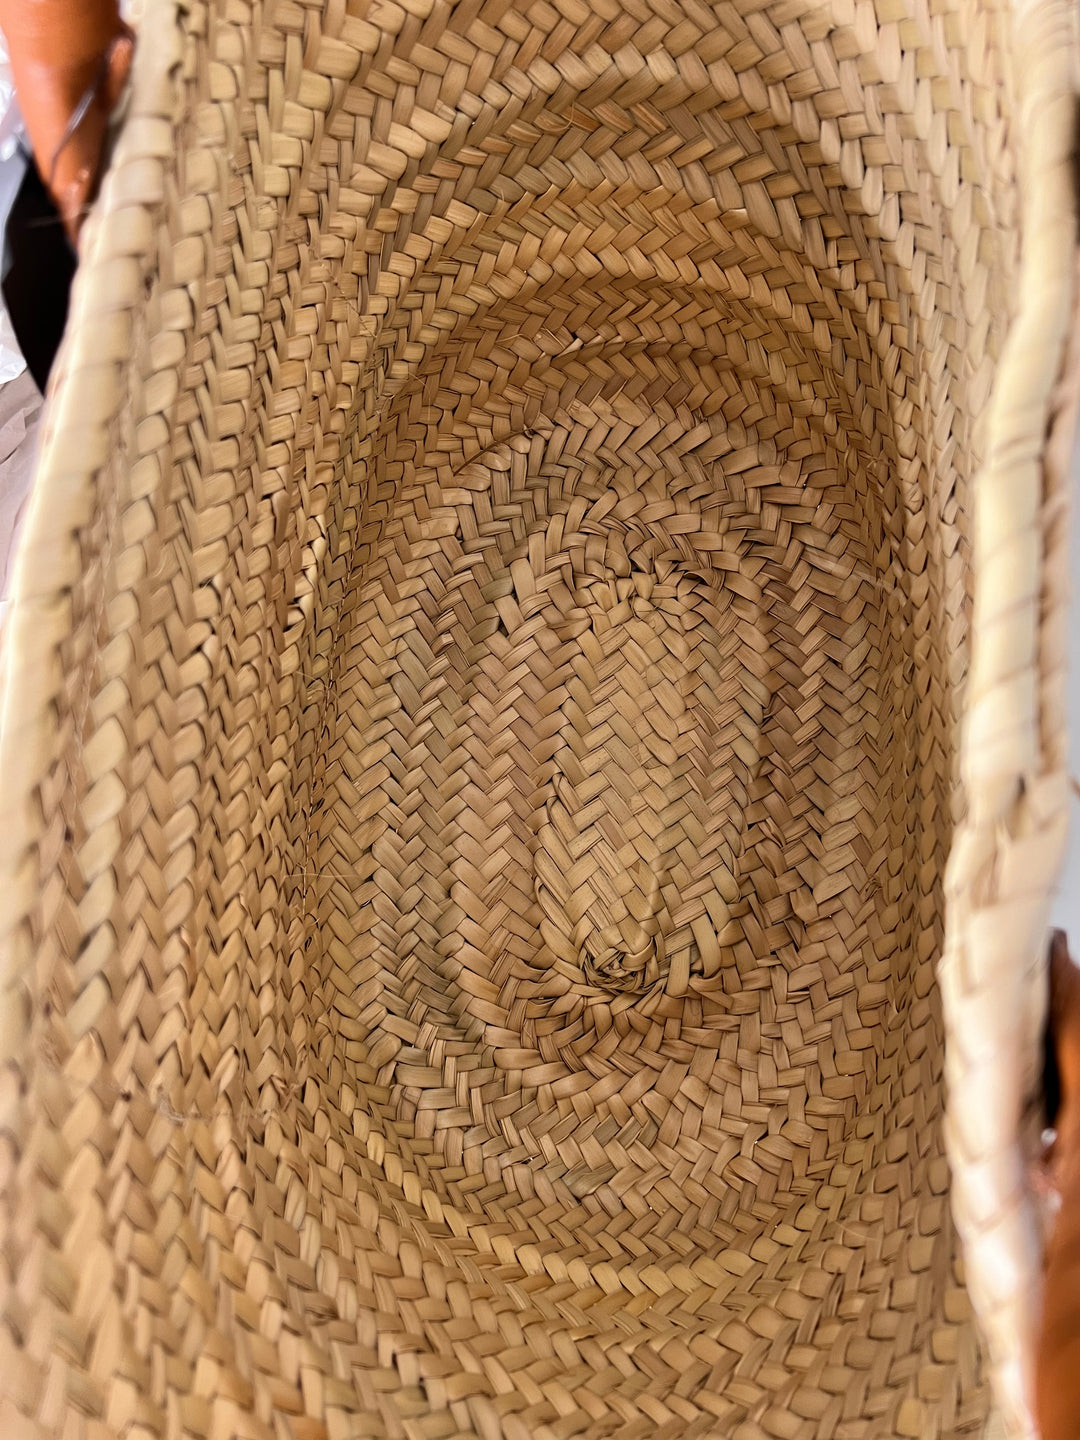 Chloé Marcie Basket Bag with fringe detailing